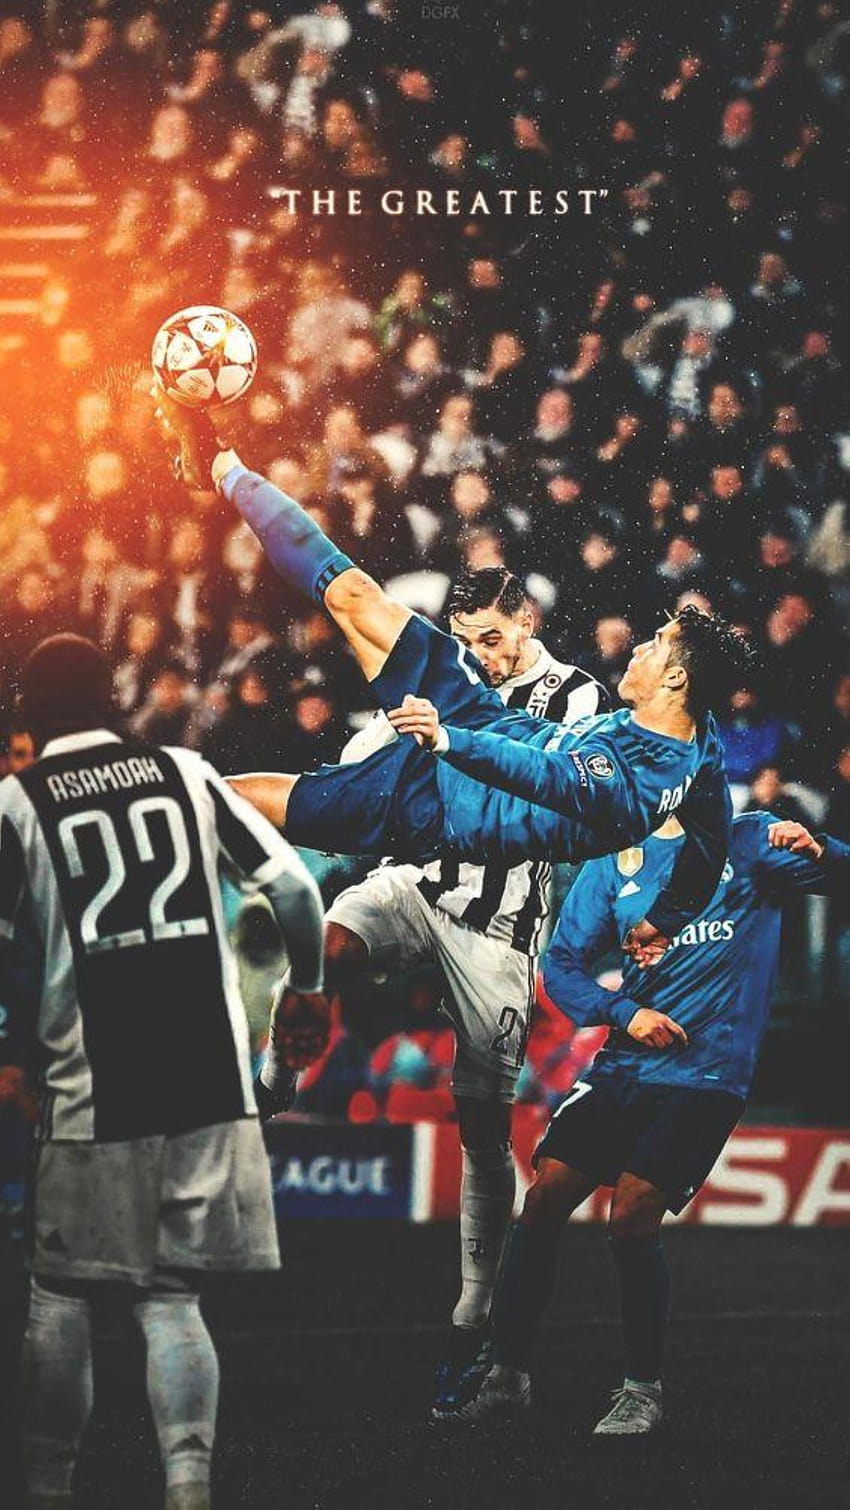 Đừng bỏ lỡ cơ hội để chiêm ngưỡng hình ảnh bóng đá đỉnh cao khi Juventus, Real Madrid và Ronaldo cùng xuất hiện trong một tuyệt tác của nghệ thuật. Sự kết hợp đẳng cấp, uy lực và chất lượng 4K sẽ khiến bạn hoàn toàn say mê.